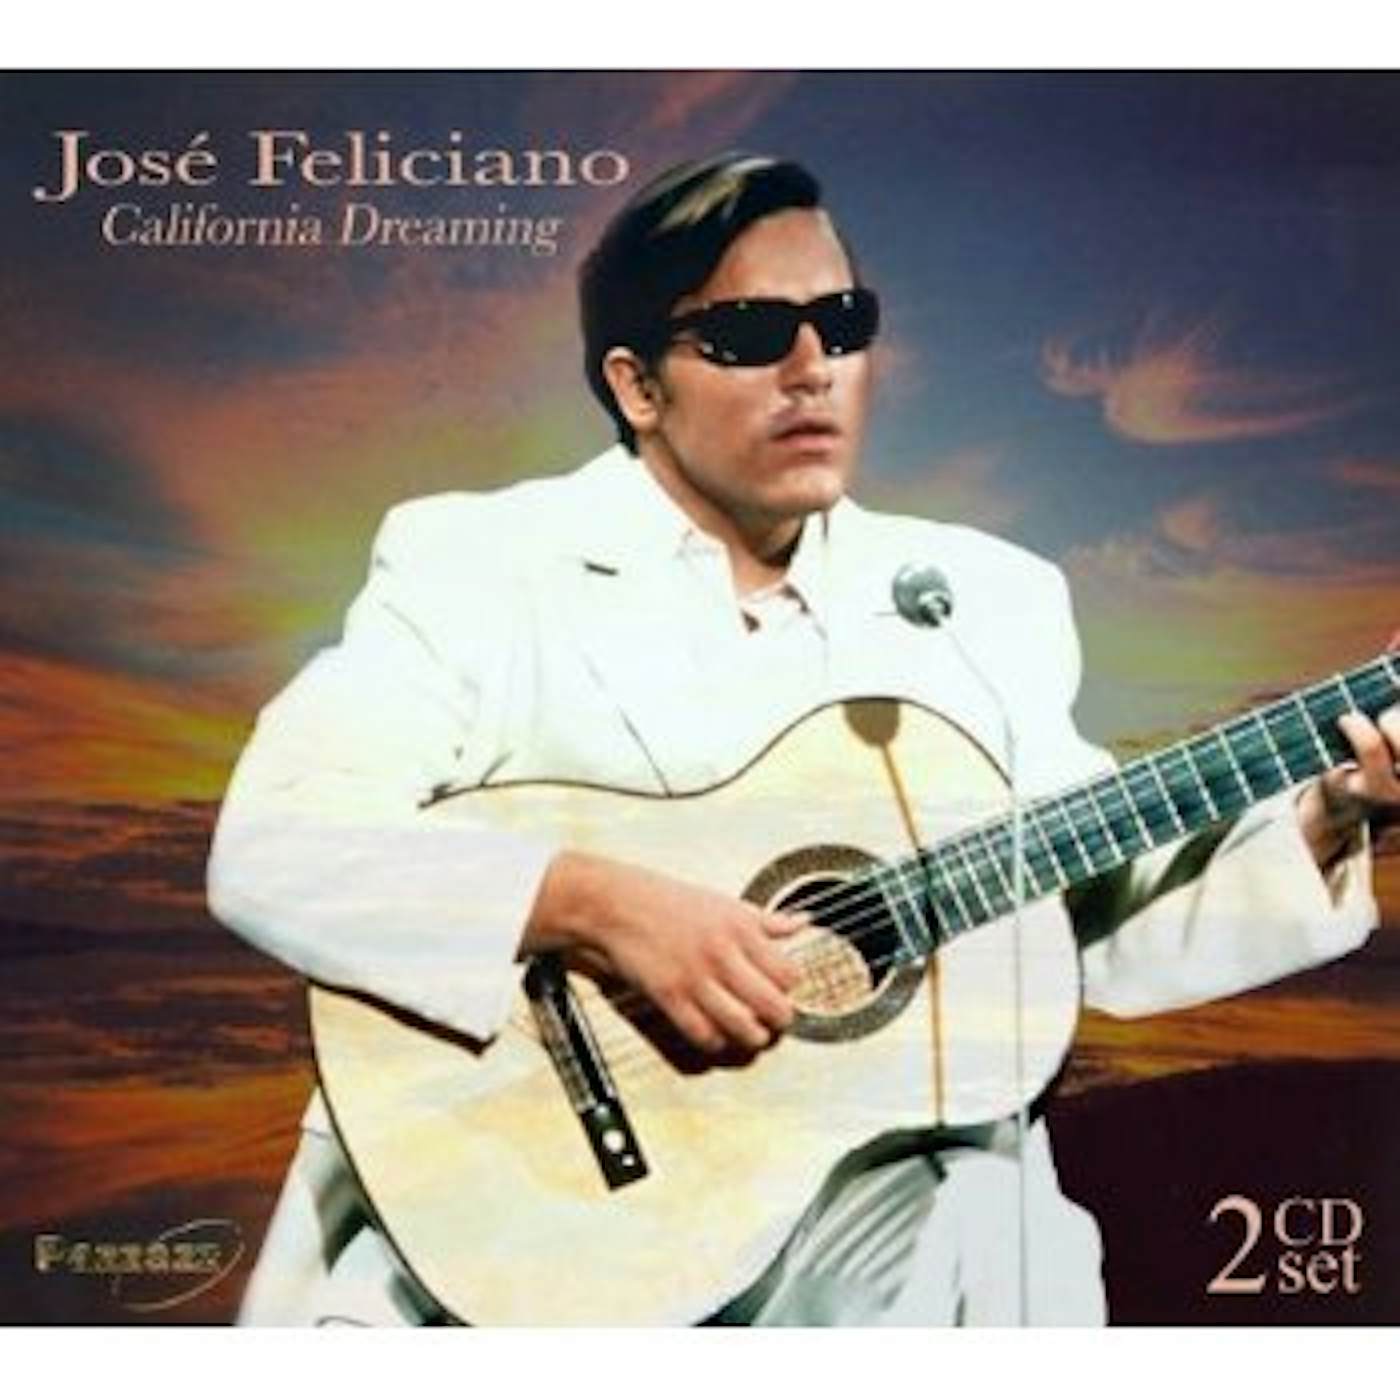 José Feliciano CALIFORNIA DREAMING CD